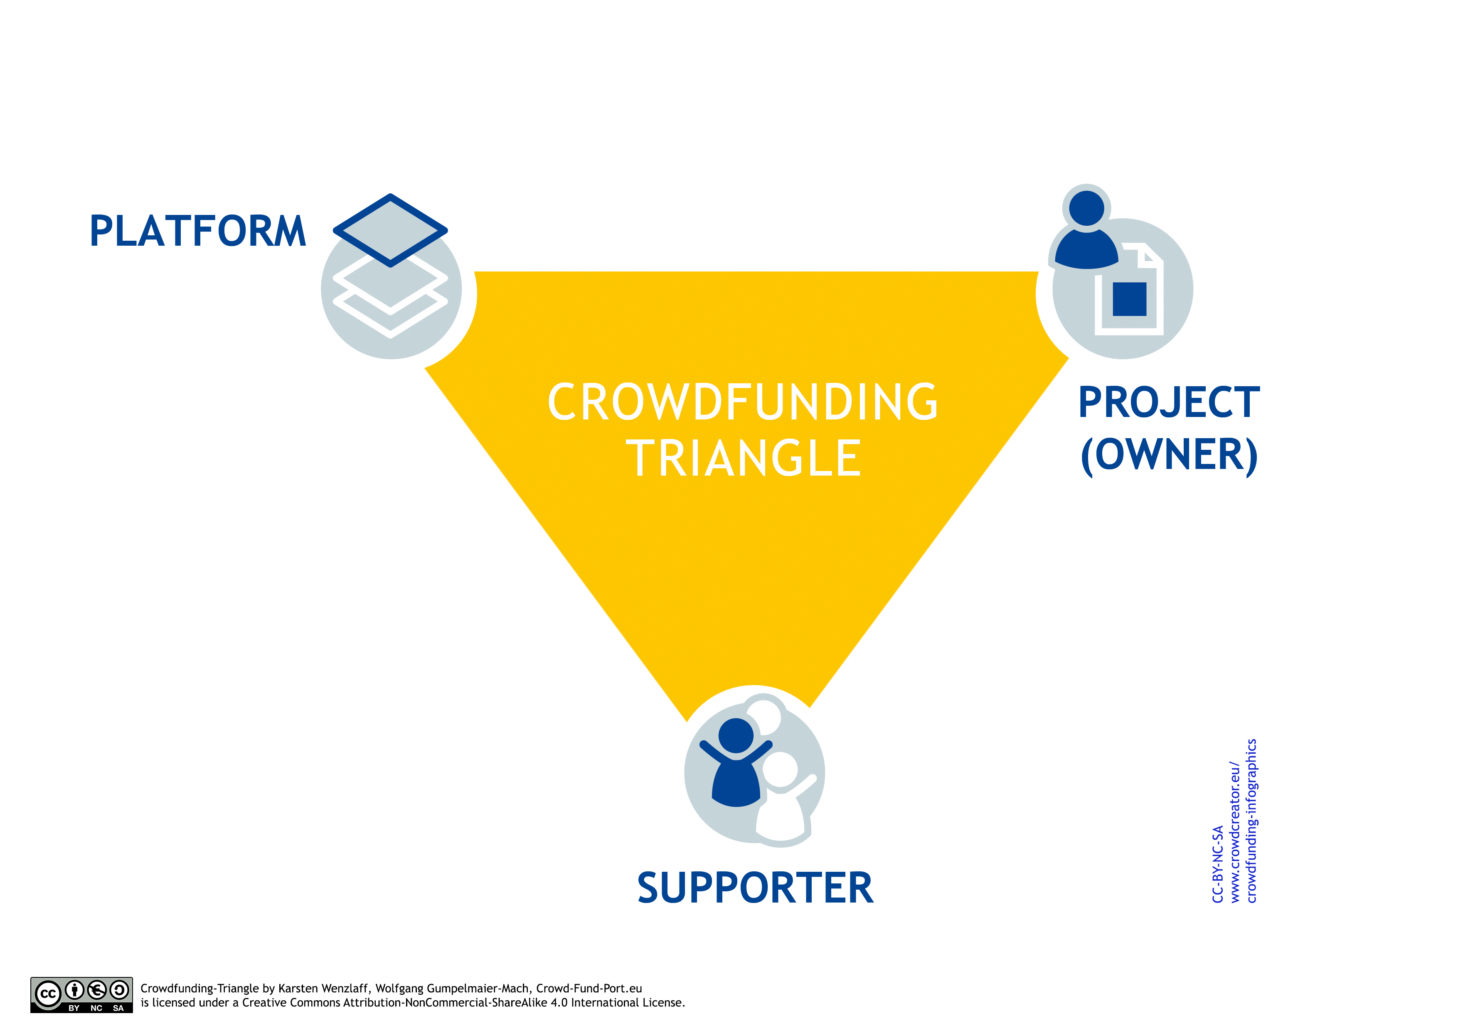 Crowdfunding international отзывы: Отзывы о компании CrowdFunding International